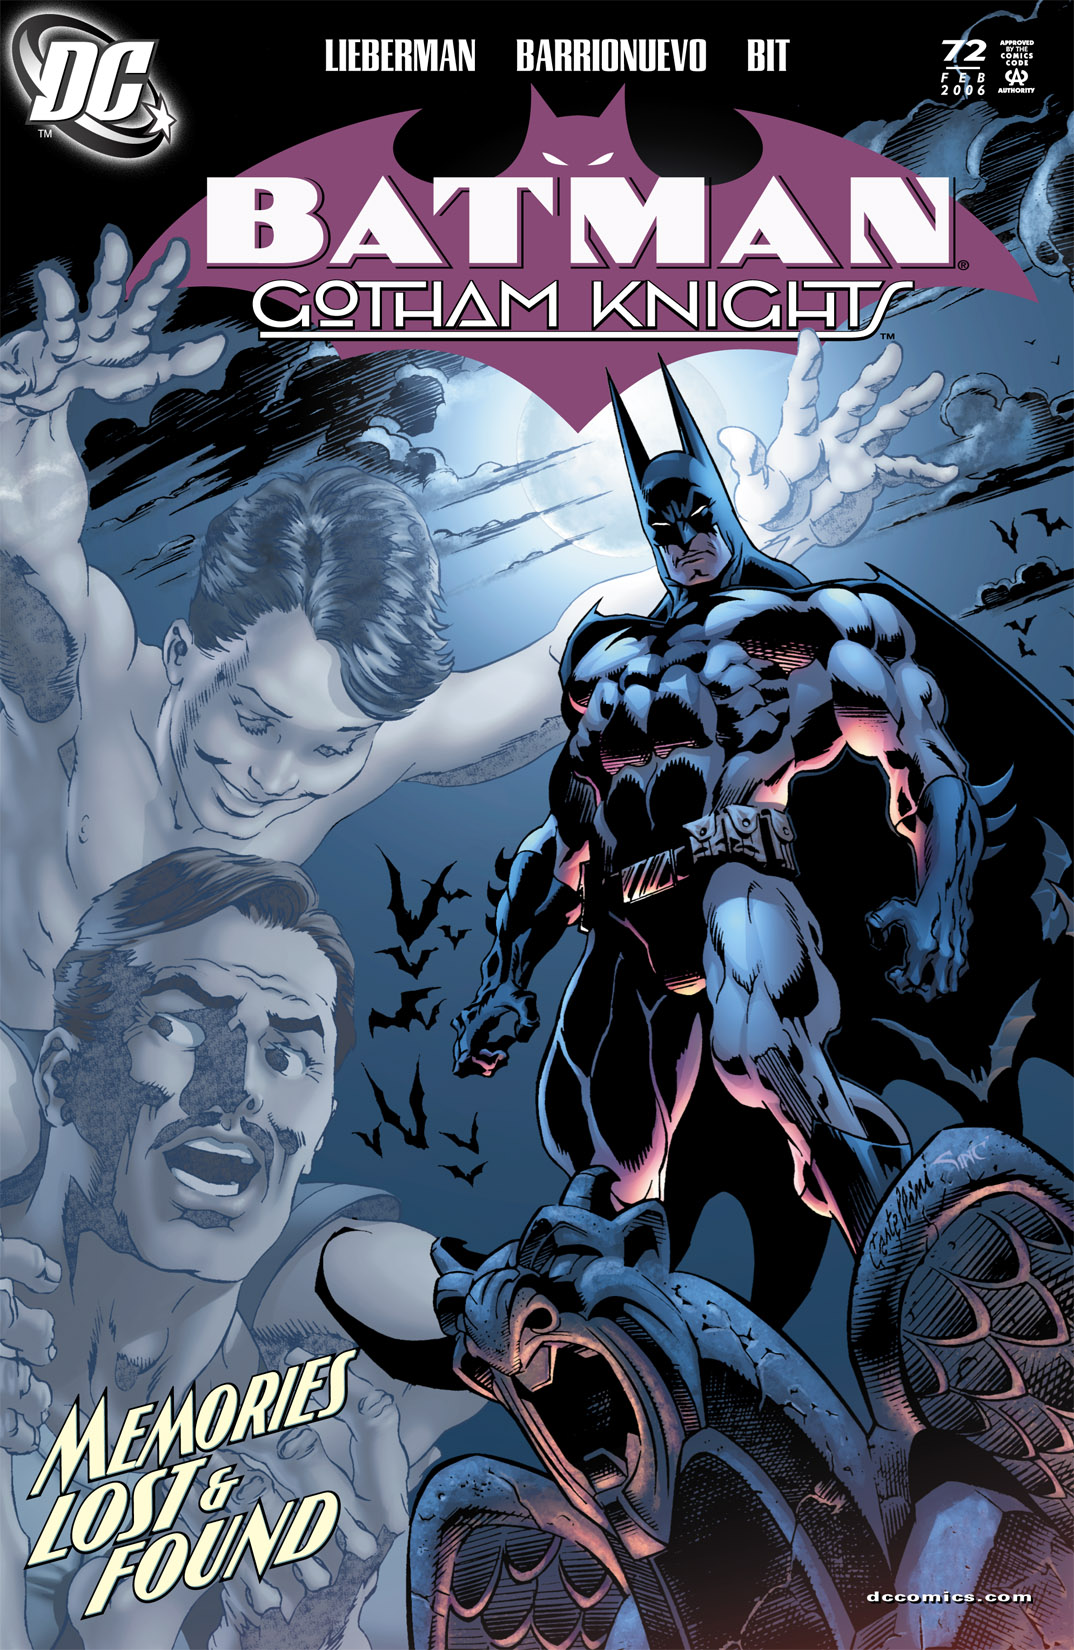 Batman Gotham Knights Issue 72 | Read Batman Gotham Knights Issue 72 comic  online in high quality. Read Full Comic online for free - Read comics online  in high quality .| READ COMIC ONLINE